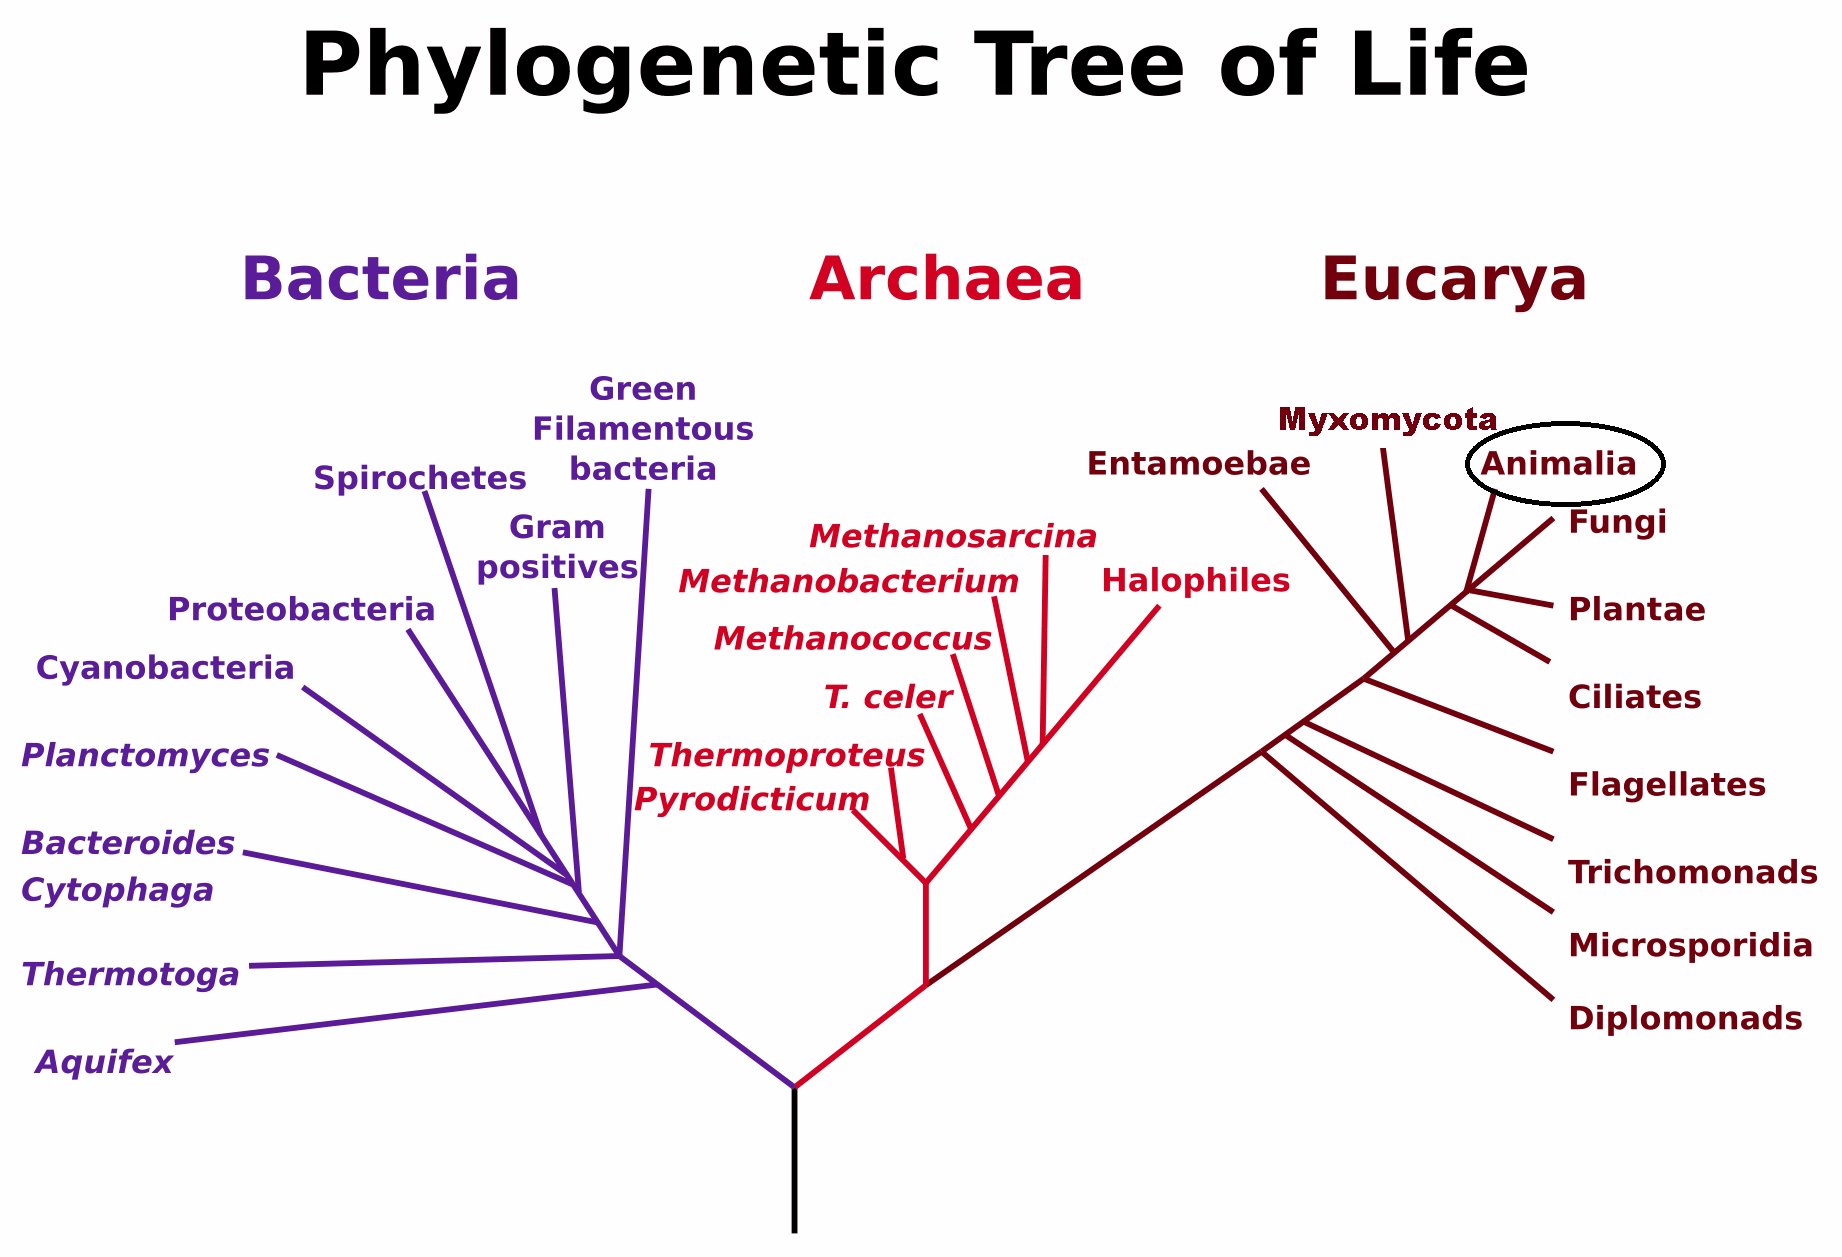 Phylogenetic Tree image courtesy of WikiMedia Commons